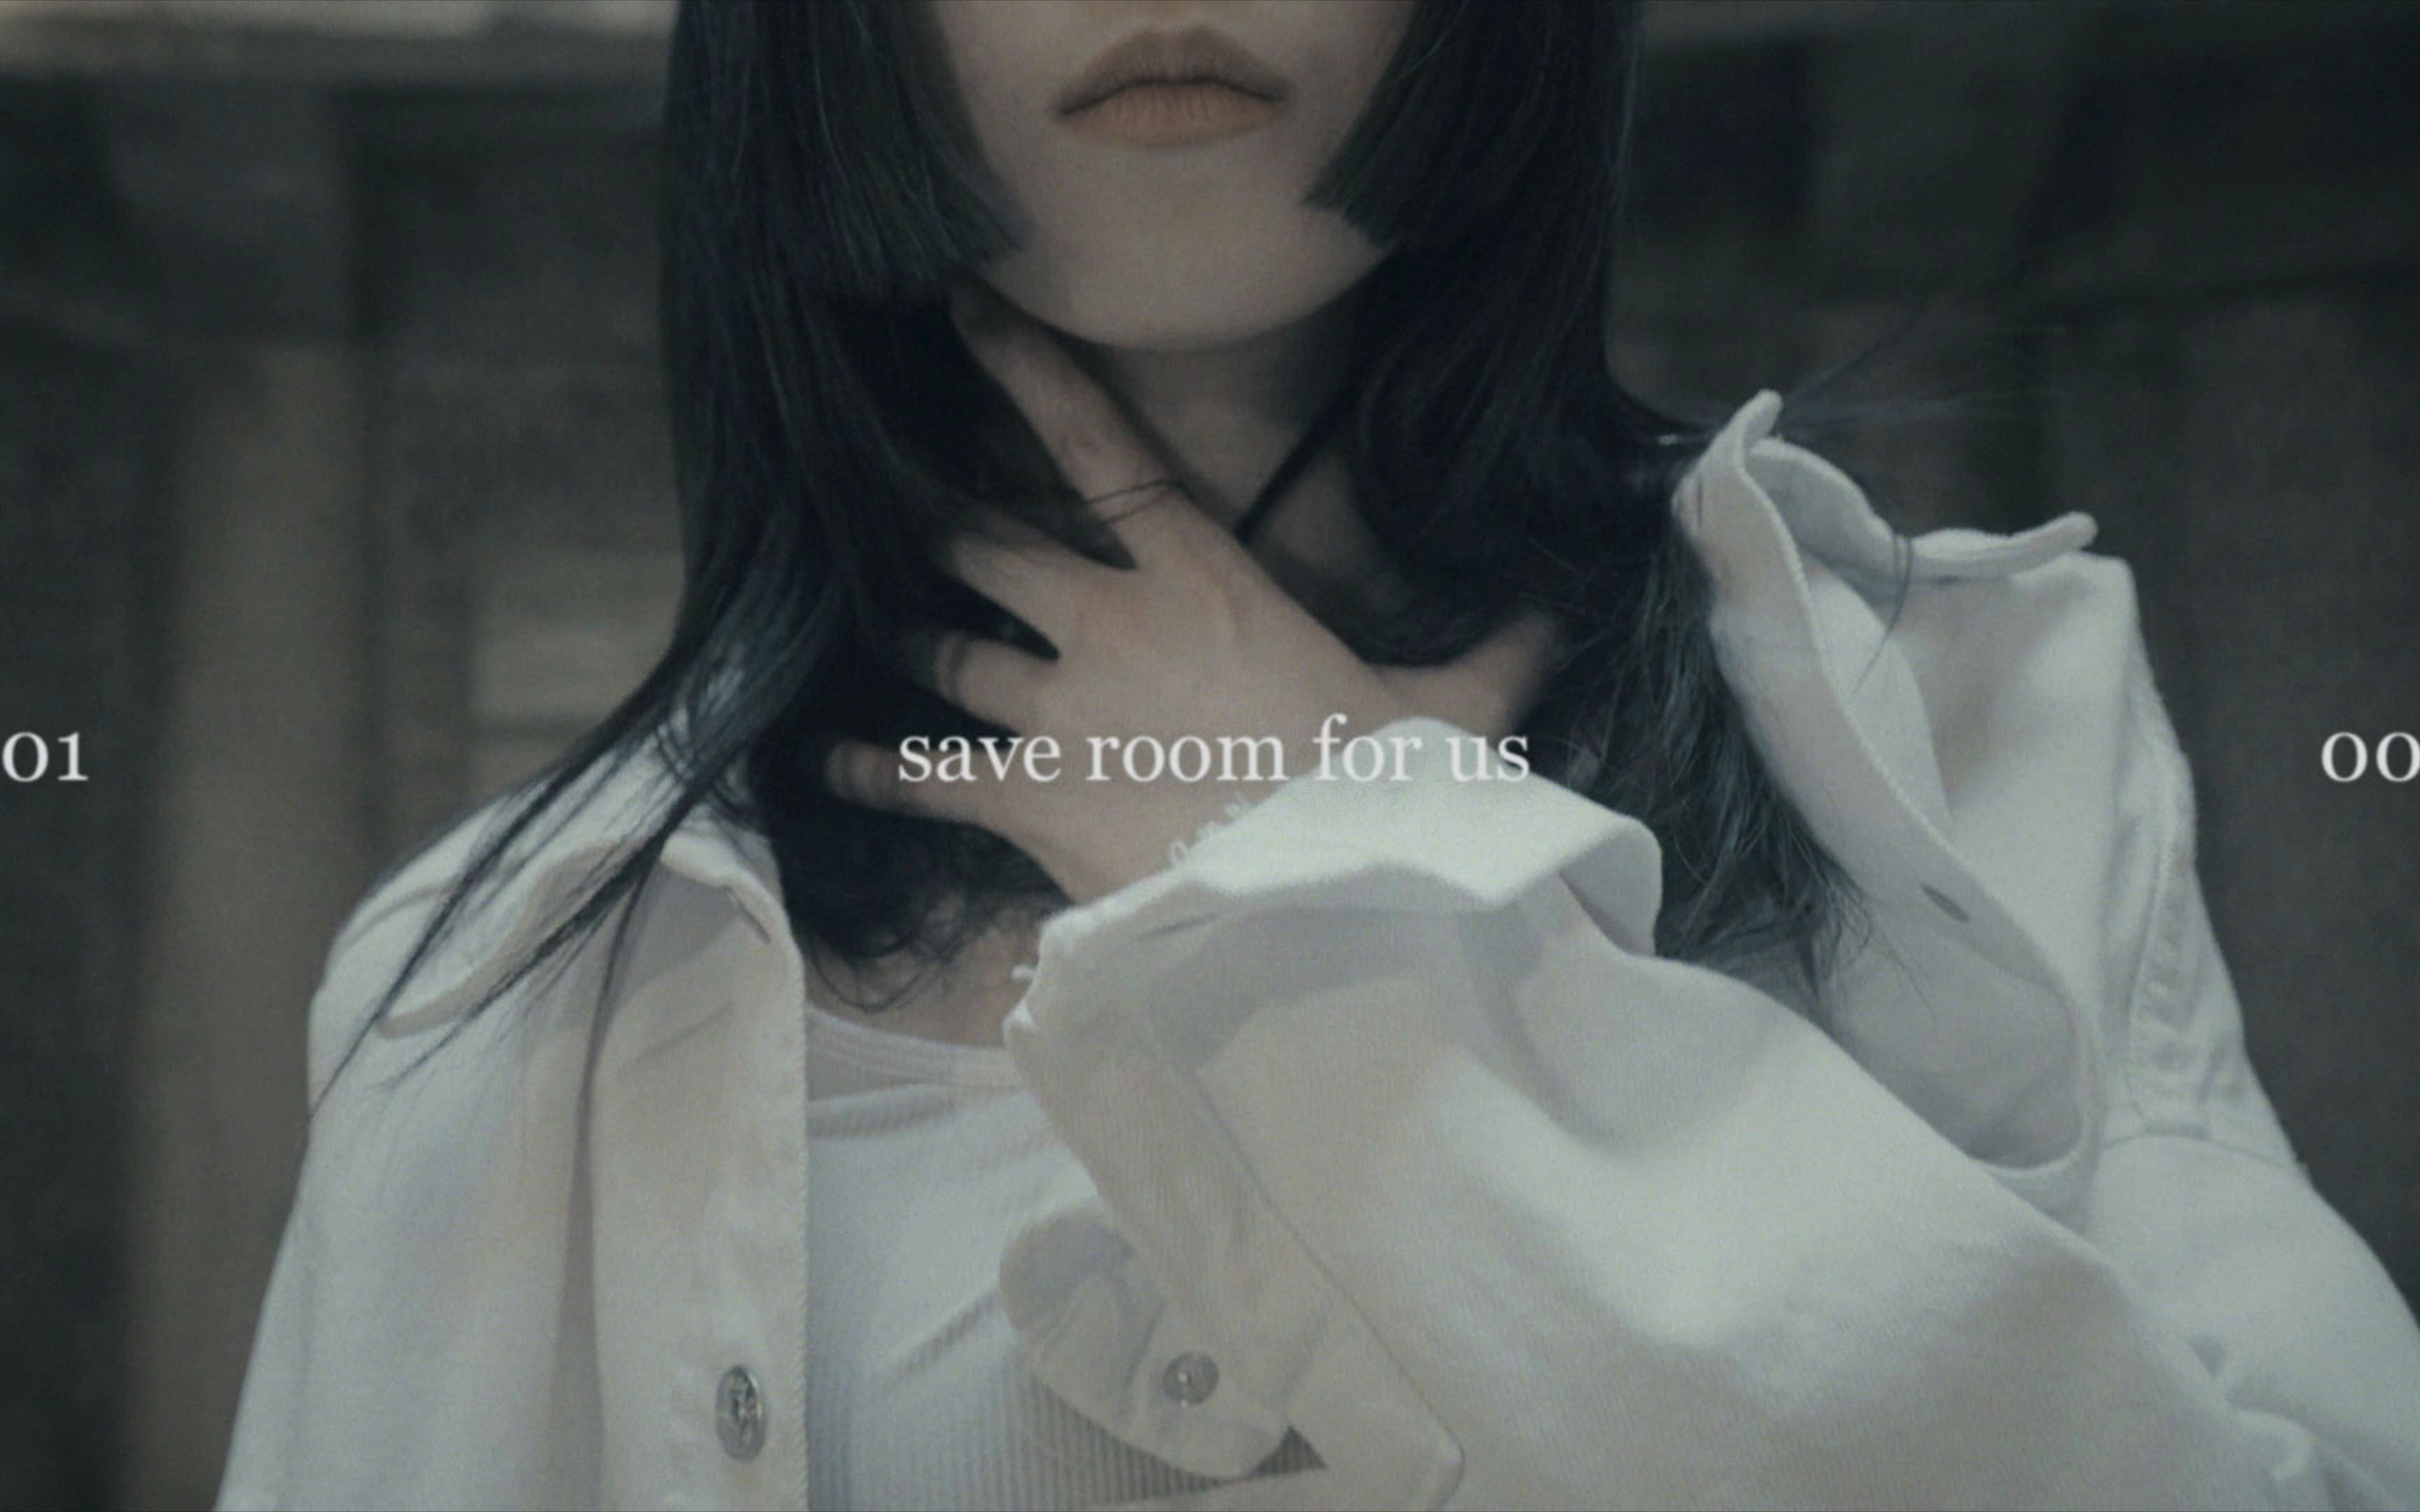 【1M制作】Tina Boo编舞《Save Room For Us》(外景版)